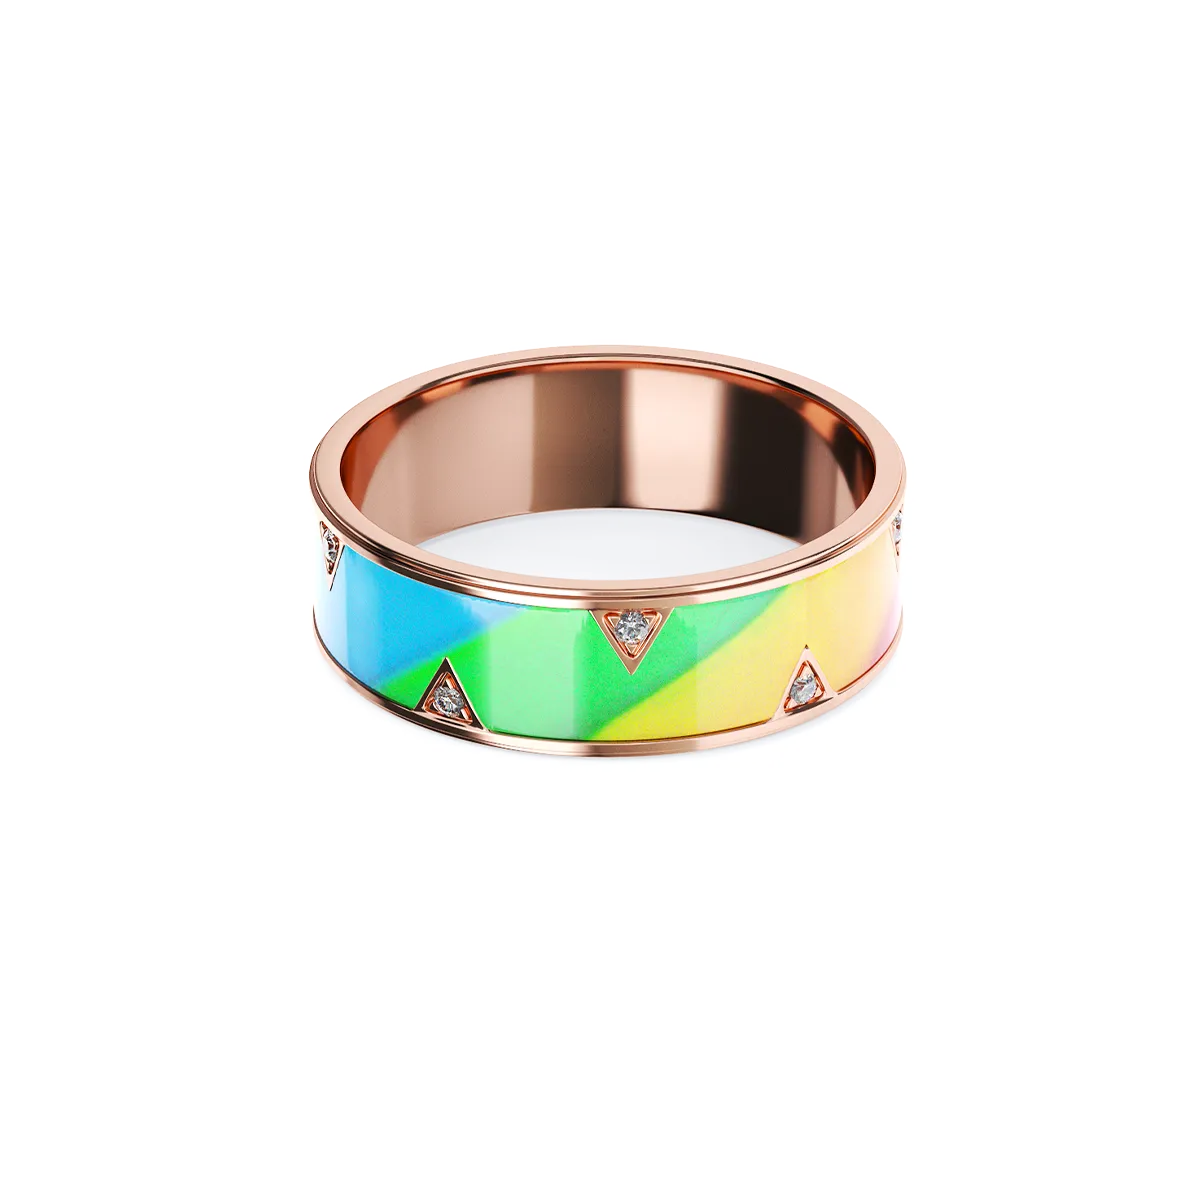 EUPHORIA gold and ceramic wedding ring